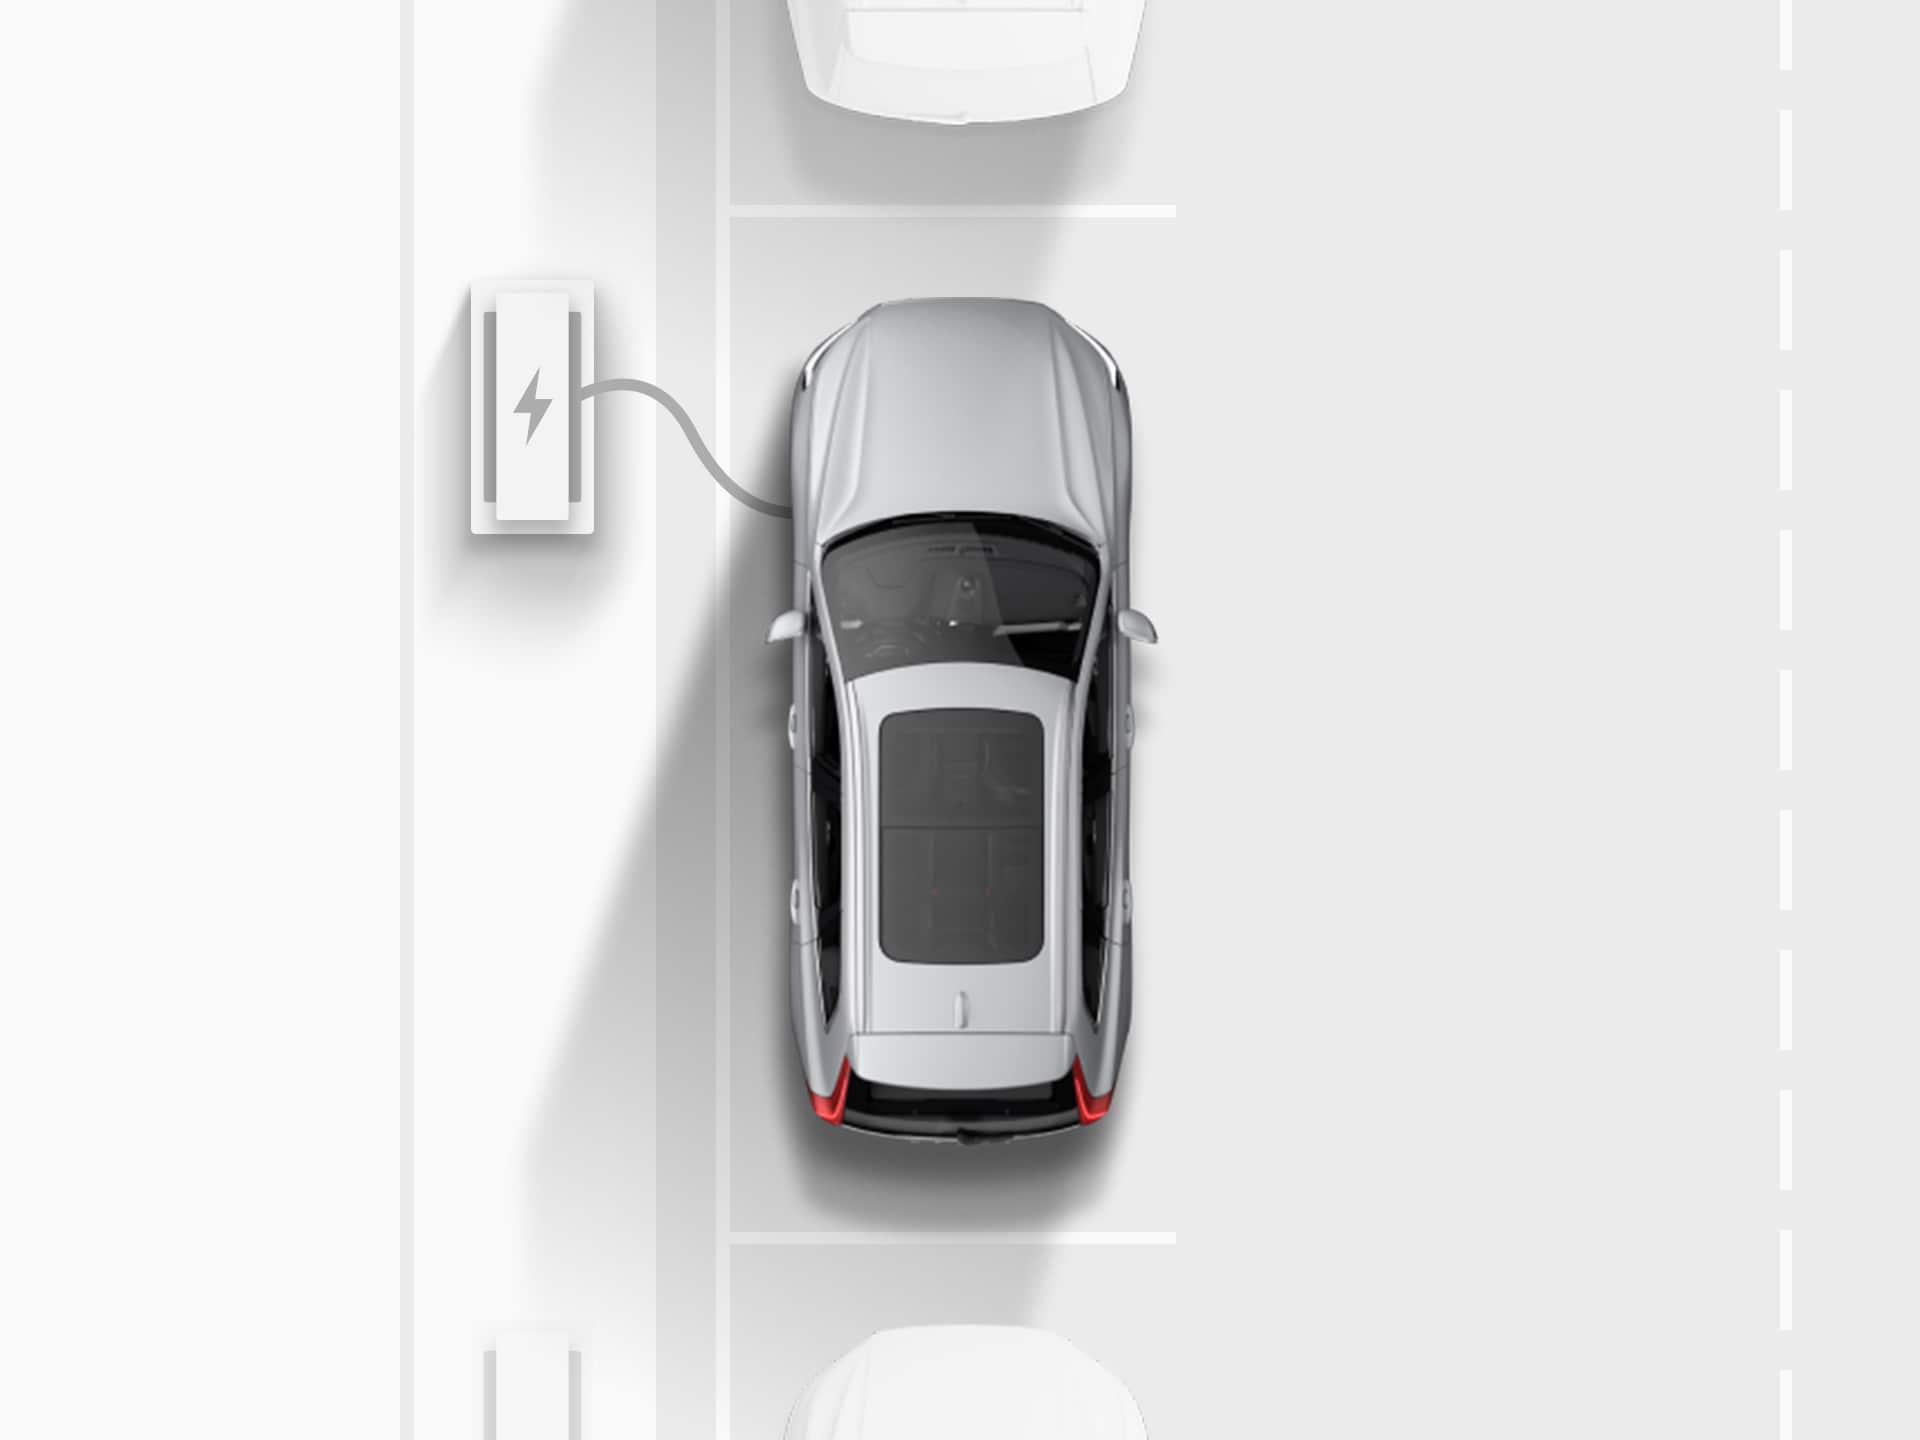 ภาพมุมสูงของภาพวาดดิจิตอลของ Volvo XC40 Recharge SUV ระบบไฟฟ้าสีเงิน ที่กำลังเสียบสายชาร์จกับจุดชาร์จไฟ ขณะจอดเทียบอยู่บนถนนสาธารณะ